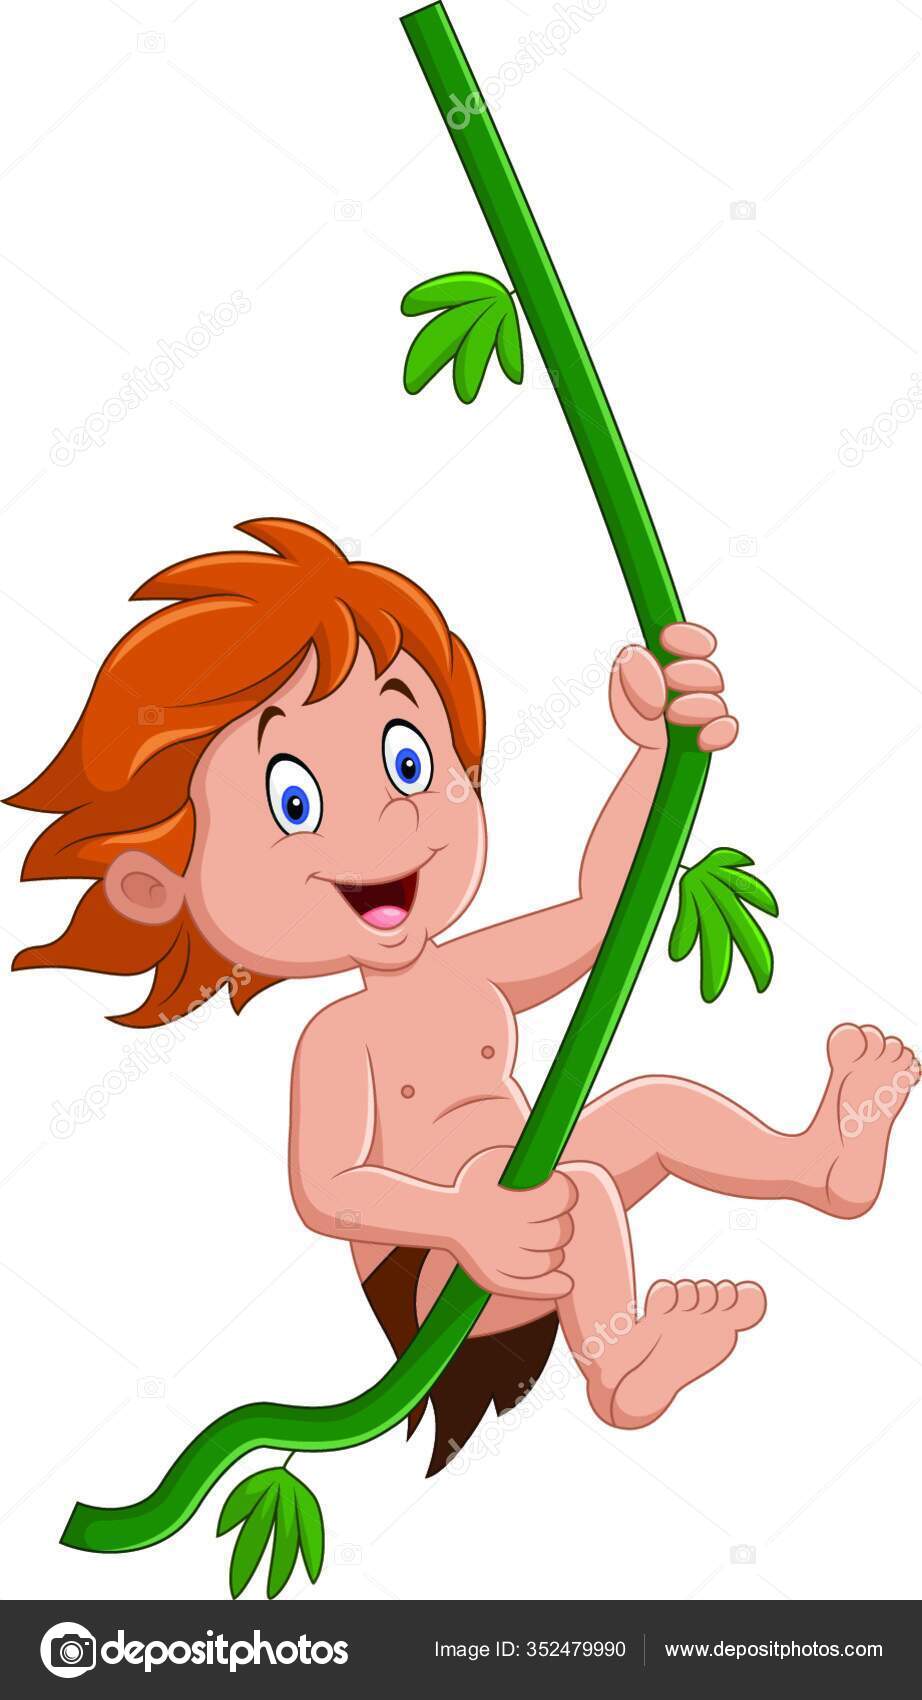 Tarzan cartoon Vector Art Stock Images | Depositphotos